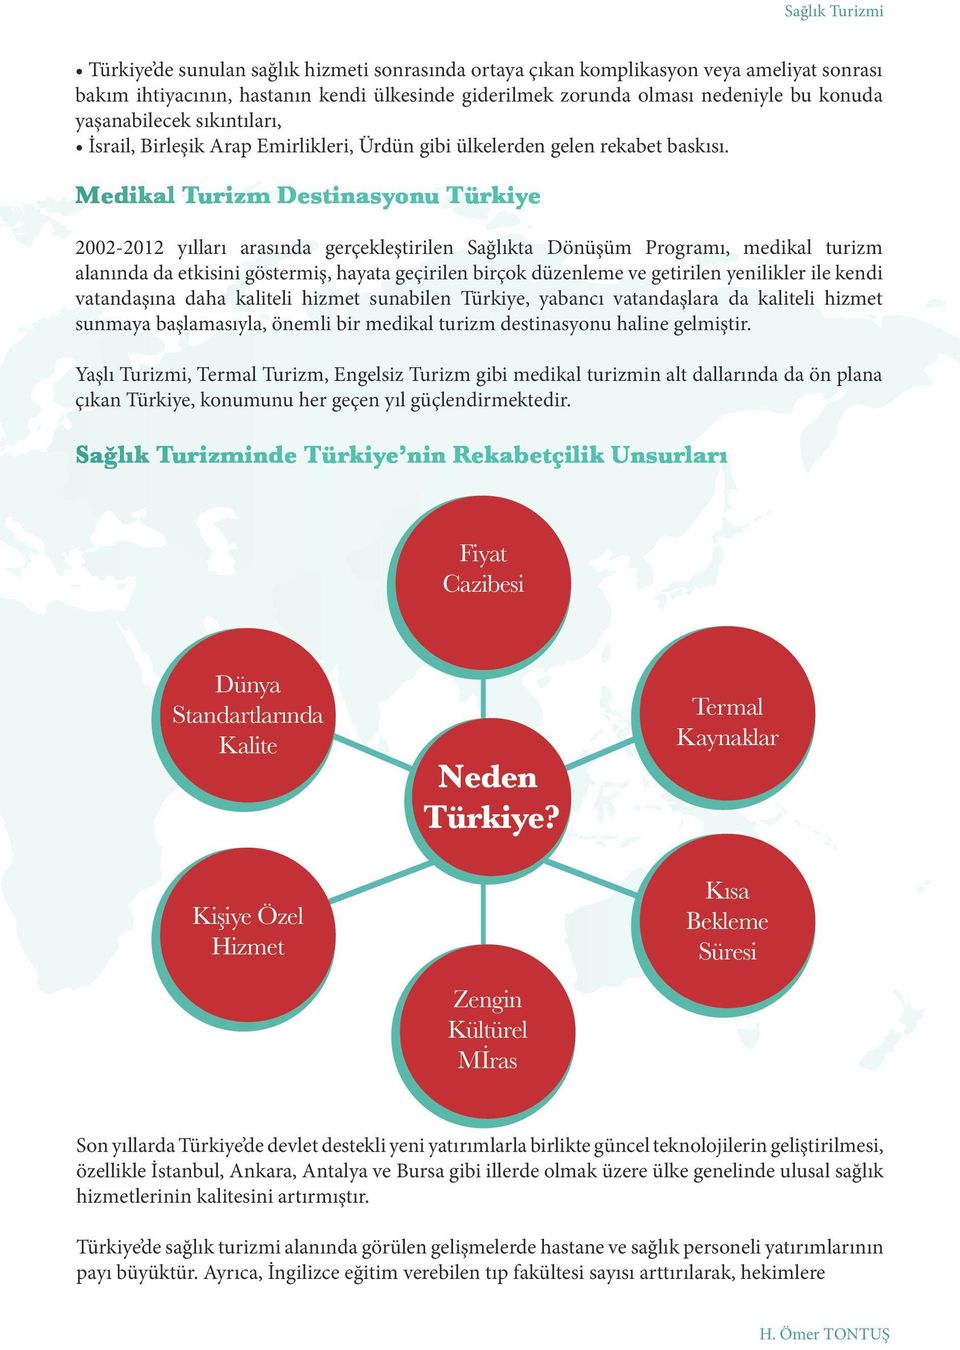 Medikal Turizm Destinasyonu Türkiye 2002-2012 yılları arasında gerçekleştirilen Sağlıkta Dönüşüm Programı, medikal turizm alanında da etkisini göstermiş, hayata geçirilen birçok düzenleme ve